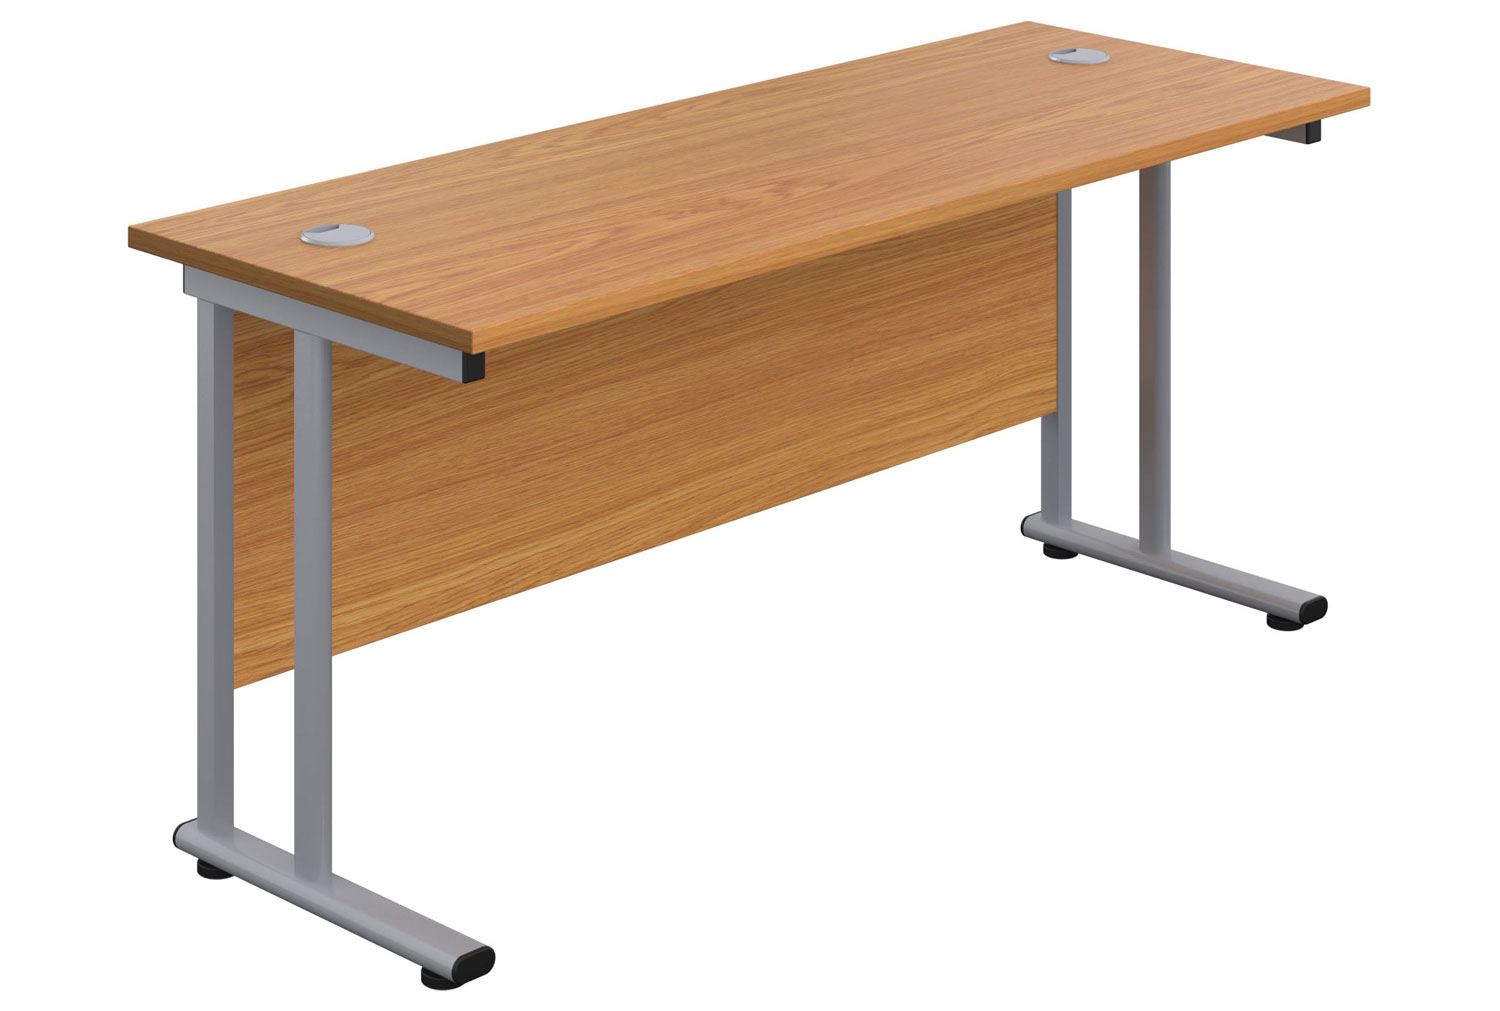 Impulse Narrow Rectangular Office Desk, 180wx60dx73h (cm), Silver Frame, Oak, Fully Installed